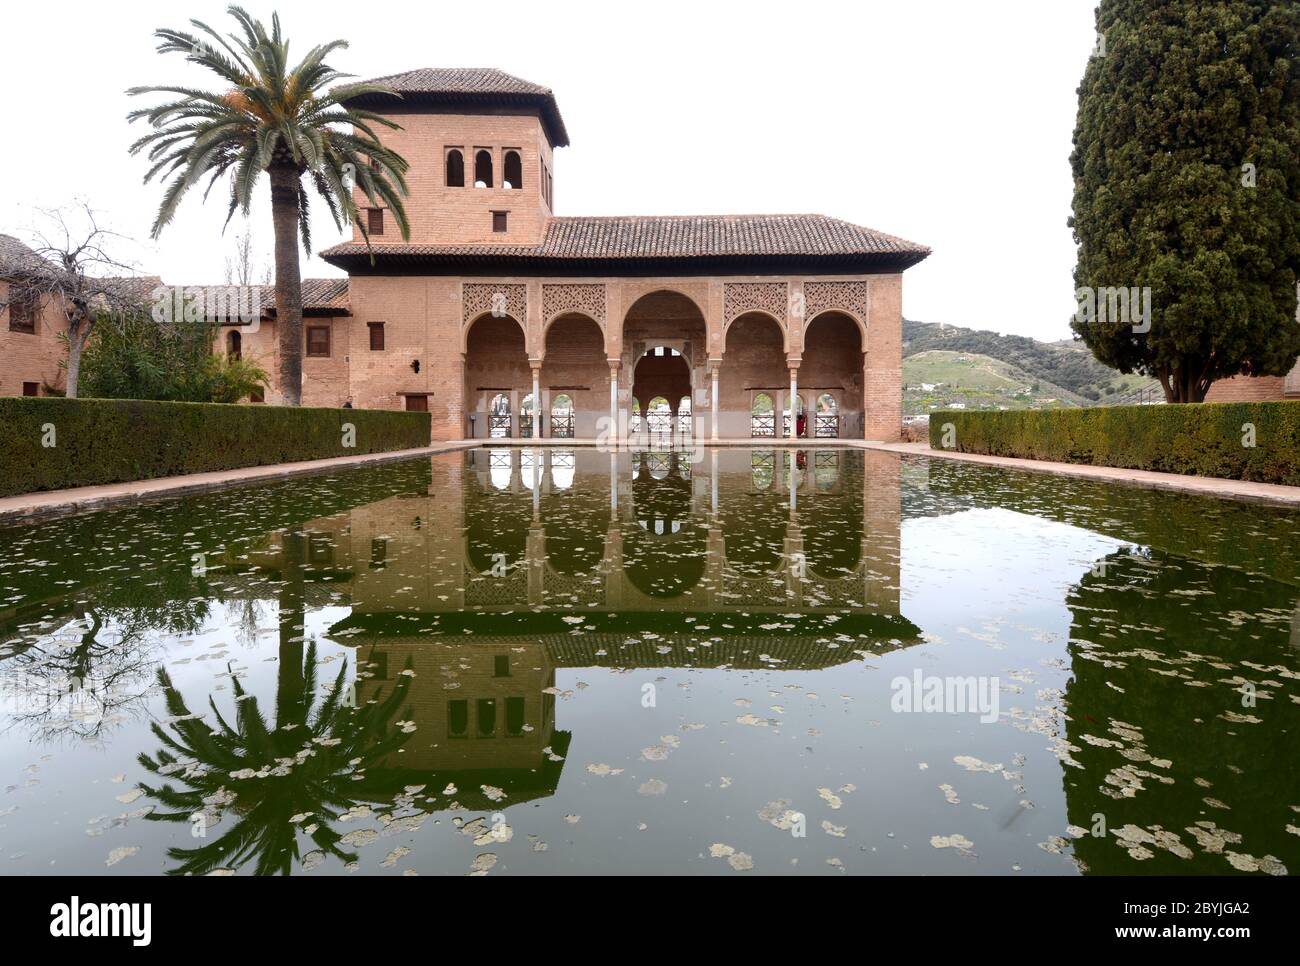 Spain, Andalusia / Granada - April 2, 2018: The Alhambra complex in Granada in Andalusia. Moorish architecture of Arabic origin. Stock Photo